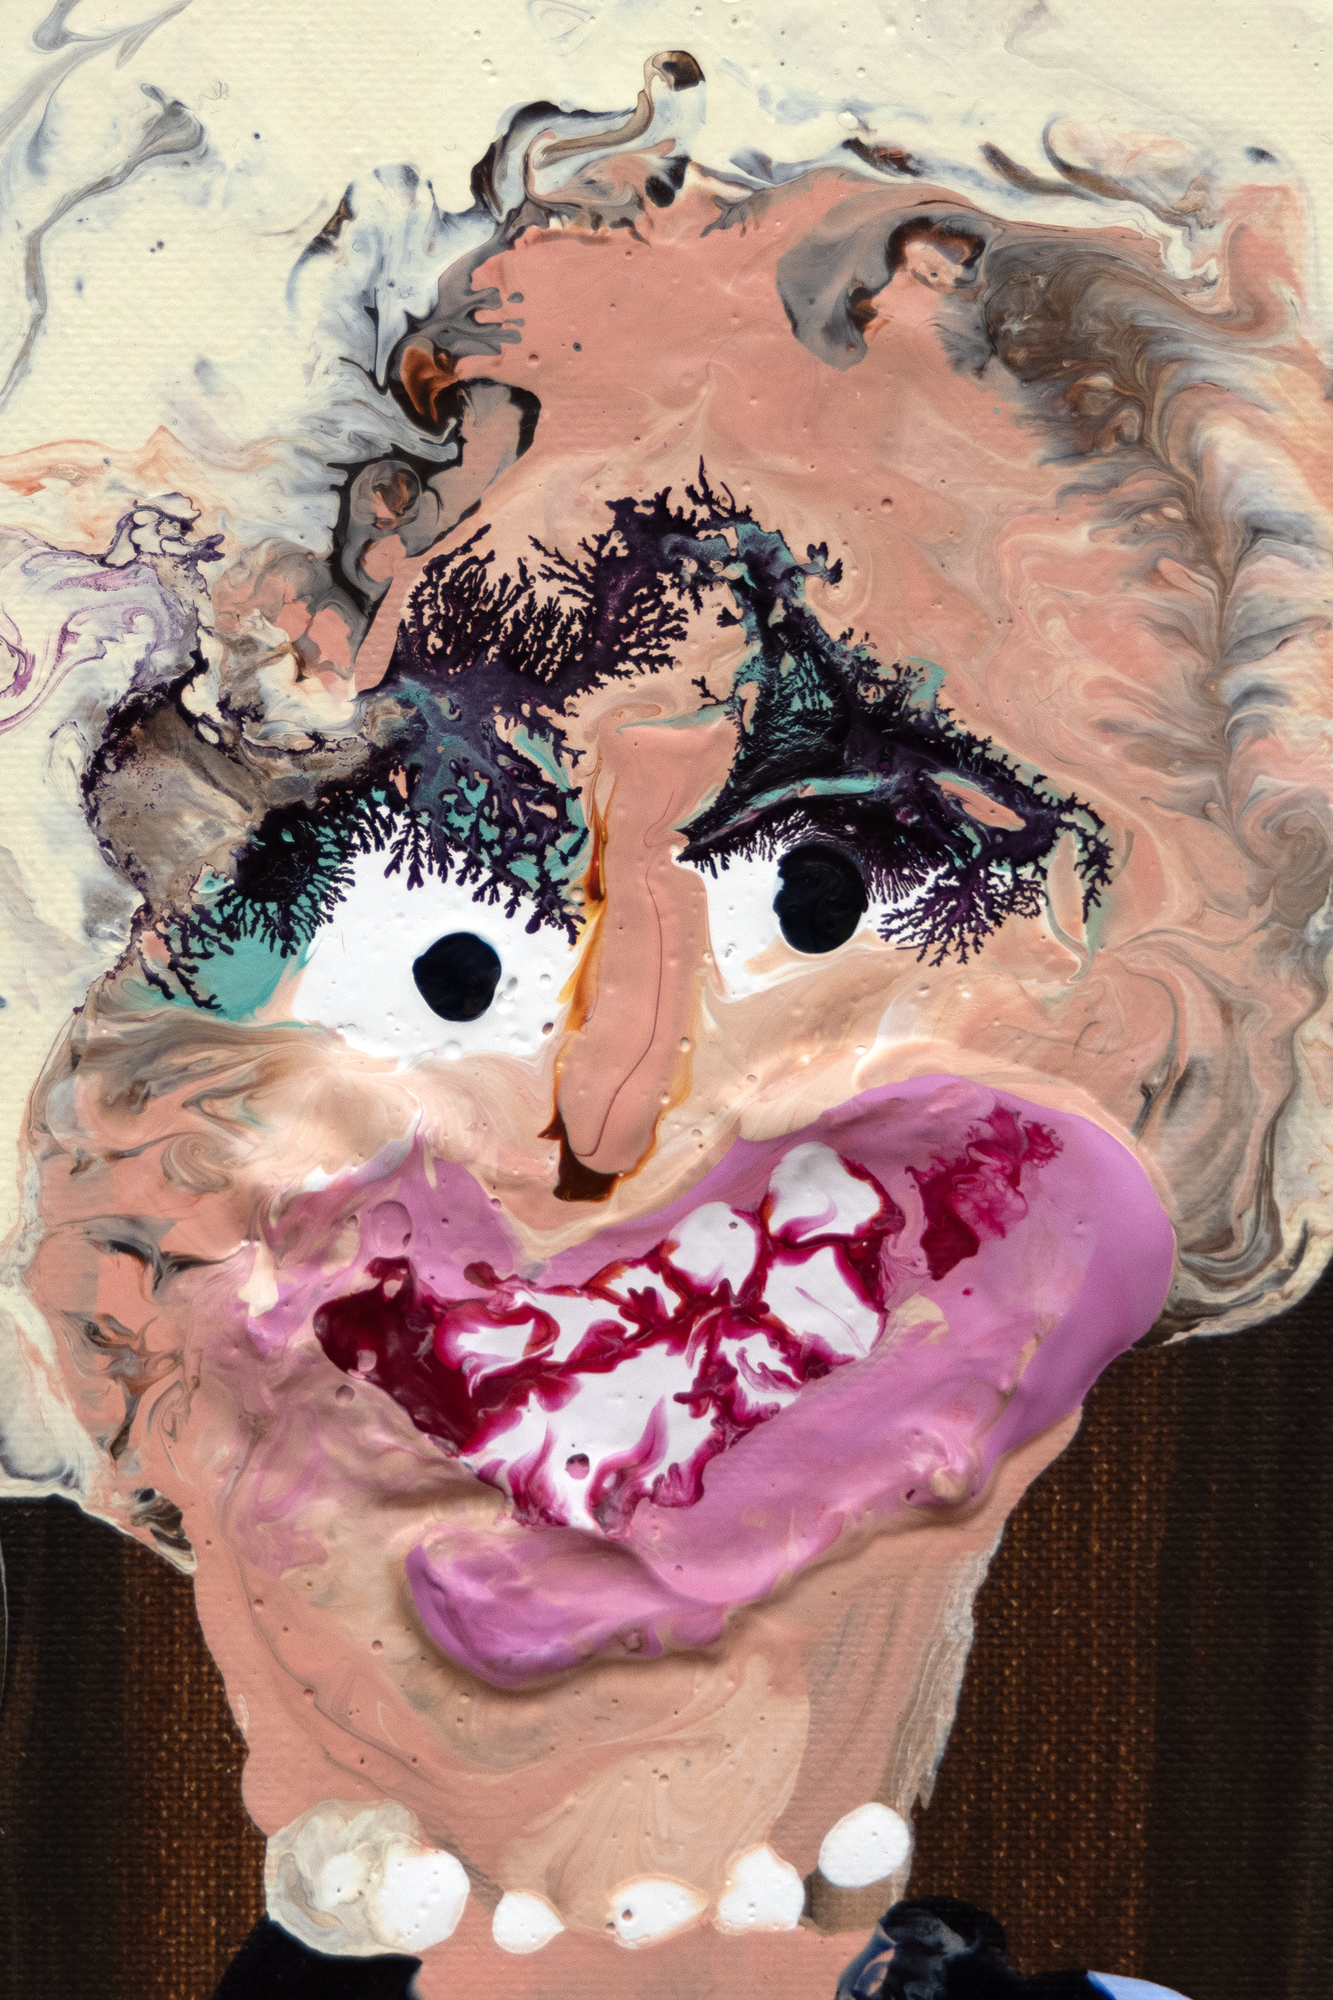 جينييف فيجيس هي شخصية بارزة في المشهد الفني الأيرلندي المعاصر ، معروفة بصورها الجماعية الذكية والناقدة التي غالبا ما تسخر من الأعراف الاجتماعية القديمة. كانت متأخرة نسبيا في الرسم ، ولفتت انتباه فنان التخصيص الأمريكي ريتشارد برينس على تويتر ، الذي استمر في شراء أحد أعمالها وقدمها إلى الدوائر المؤثرة في مجتمع الفن في نيويورك. ينتقد عمل فيجيس بشكل هزلي عادات الاستهلاك الثرية للطبقة الوسطى وأنماط الحياة الفاخرة ، كما خلدها فنانو الماضي ، ويجلب مثل هذه الموضوعات بقوة إلى يومنا هذا بمزيج من الهجاء والتصوير الخام والأصيل للحياة. فكر في فيجيس على أنه يصل عبر رمال الزمن إلى دومير أو هوغارث ، الذي قدمت أعماله في كثير من الأحيان نظرة ساخرة على المجتمع المعاصر ، وانضم إلى فنانين منخرطين في الهجاء الاجتماعي ومعروفين بمهاراتهم الشديدة في الملاحظة.